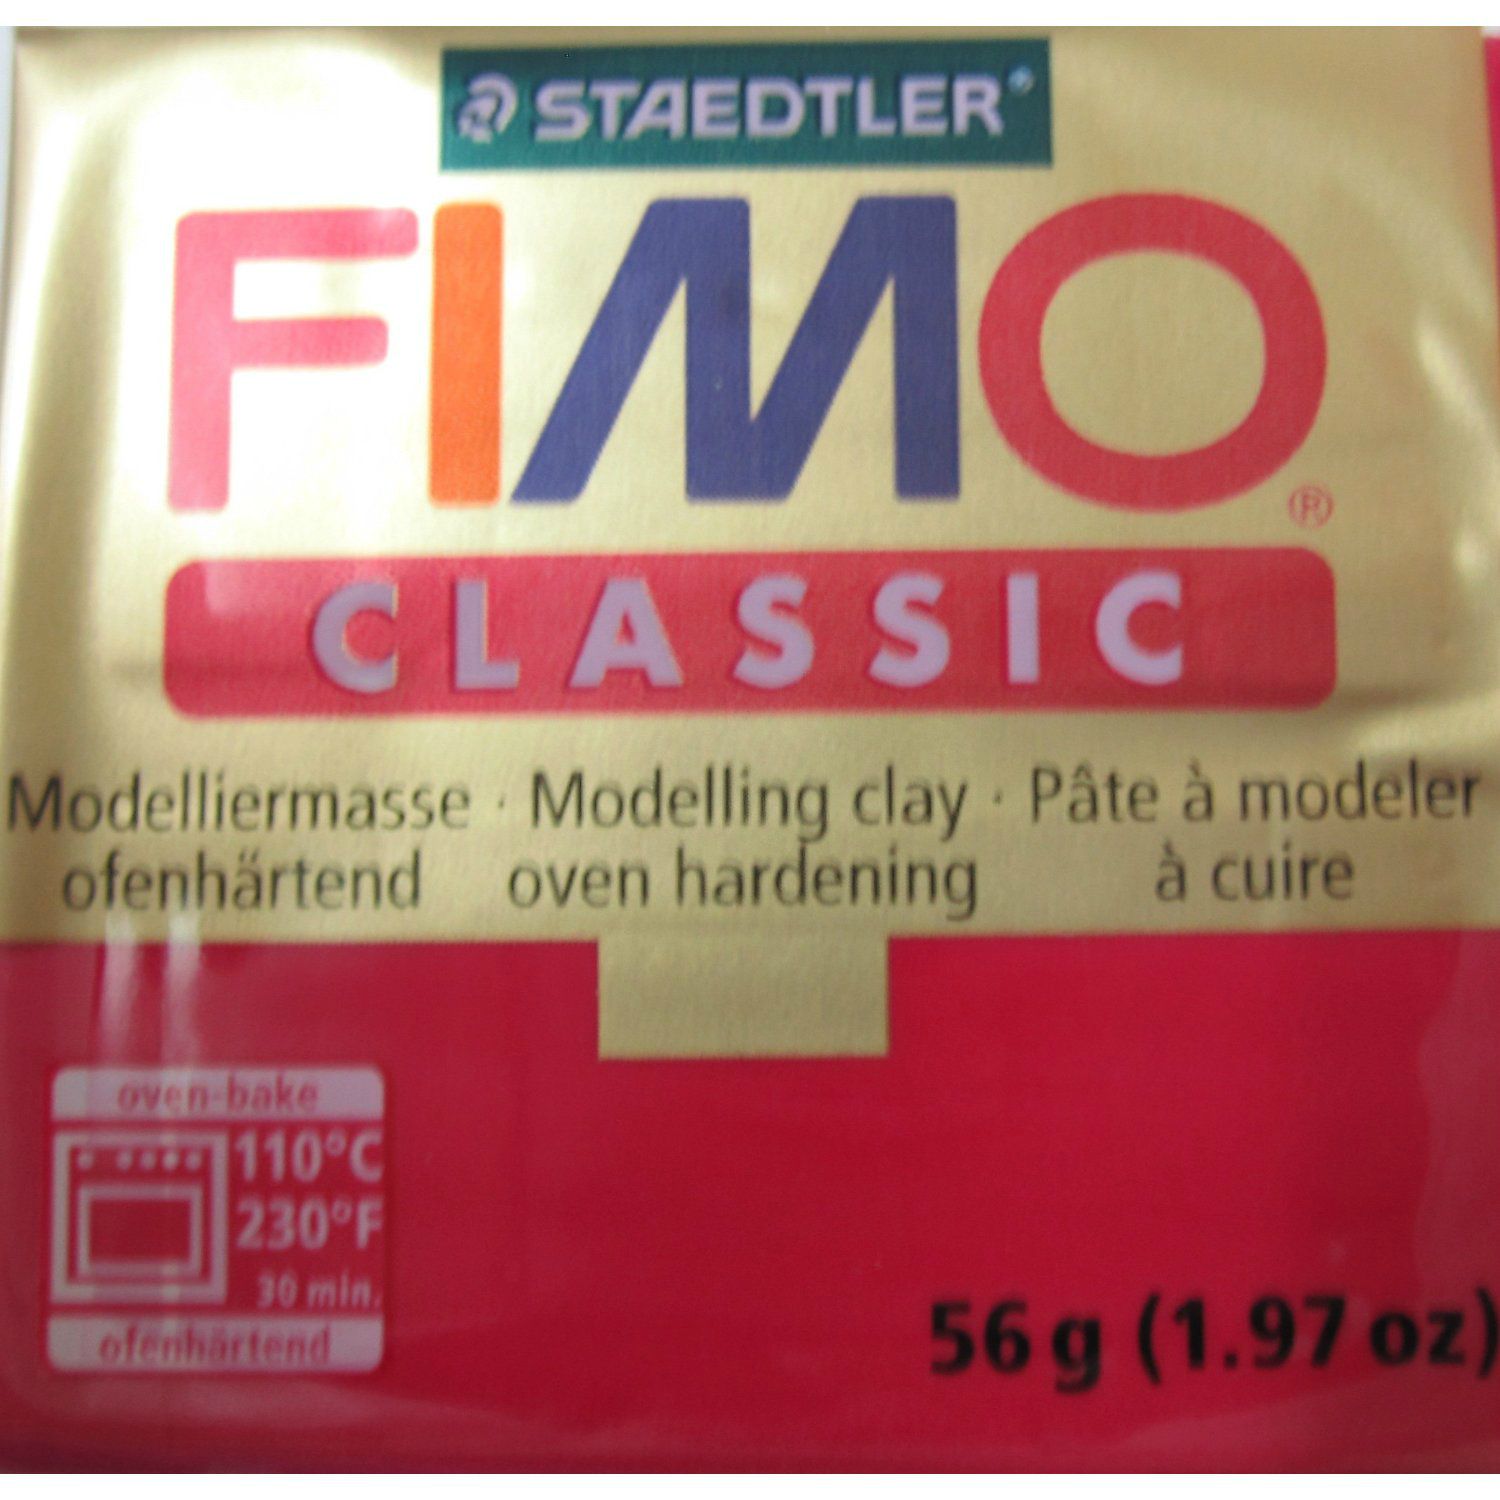 Les différents types de pâte FIMO